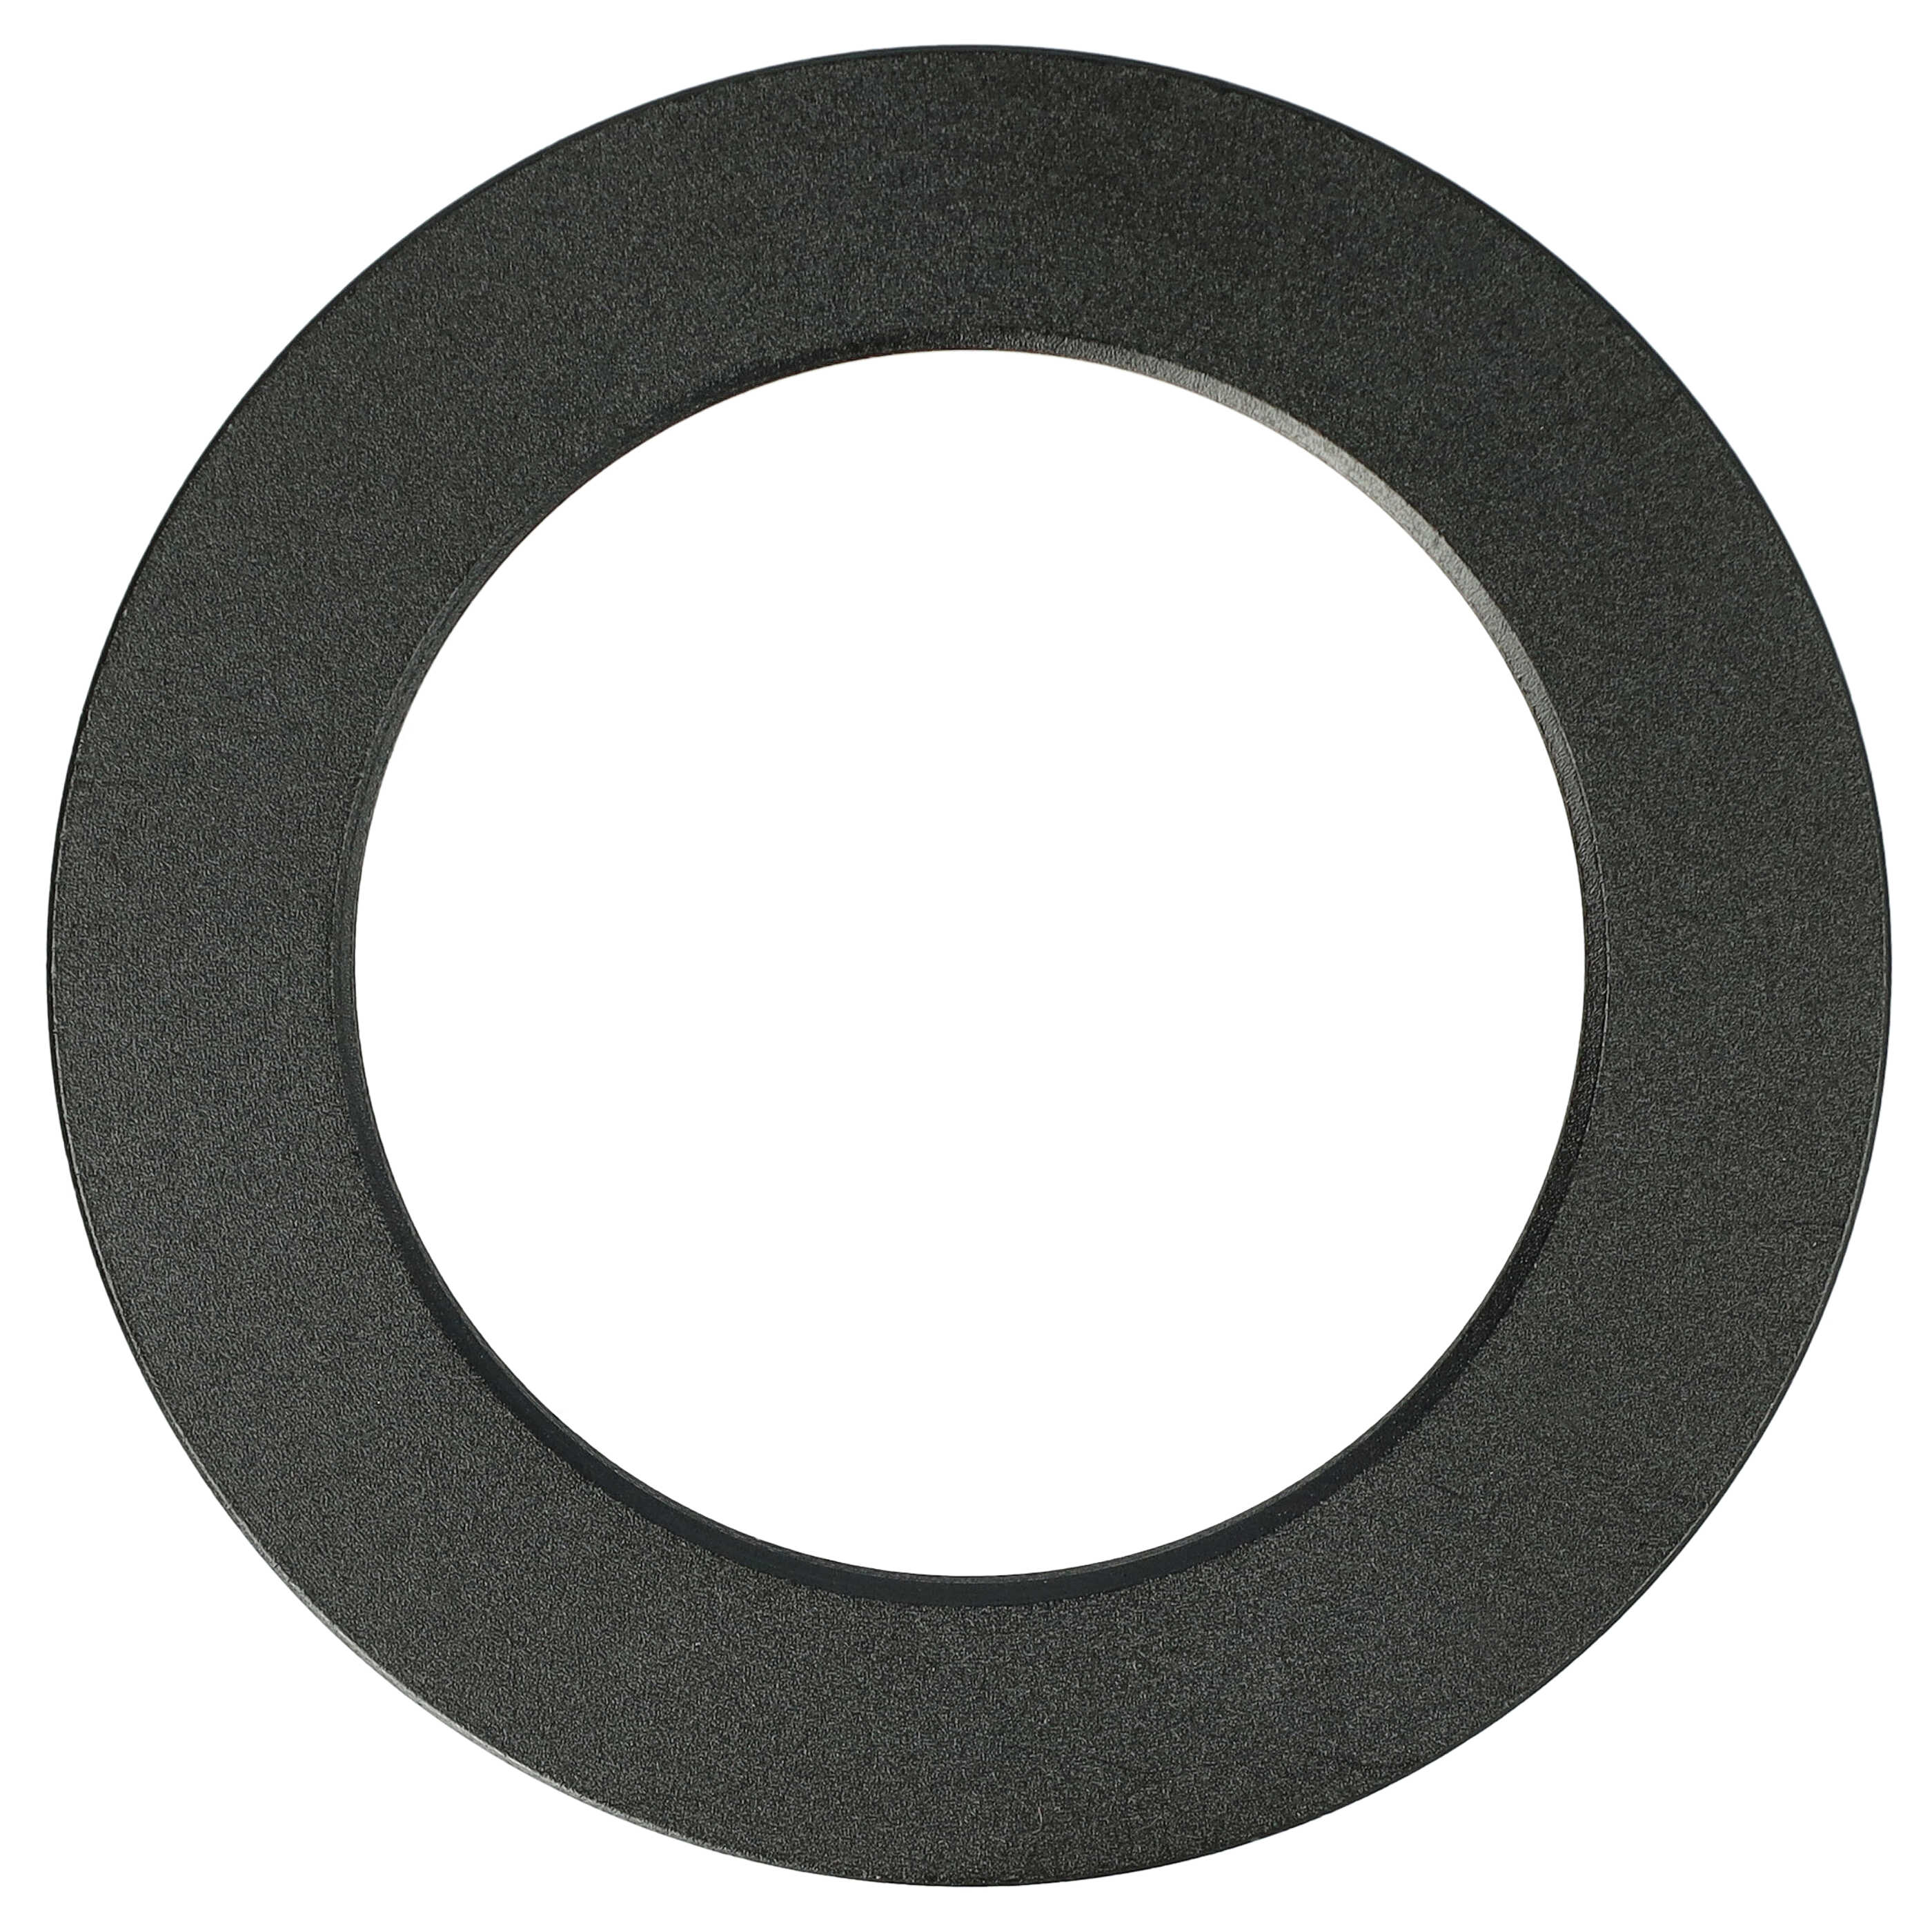 Redukcja filtrowa adapter Step-Down 52 mm - 37 mm pasująca do obiektywu - metal, czarny